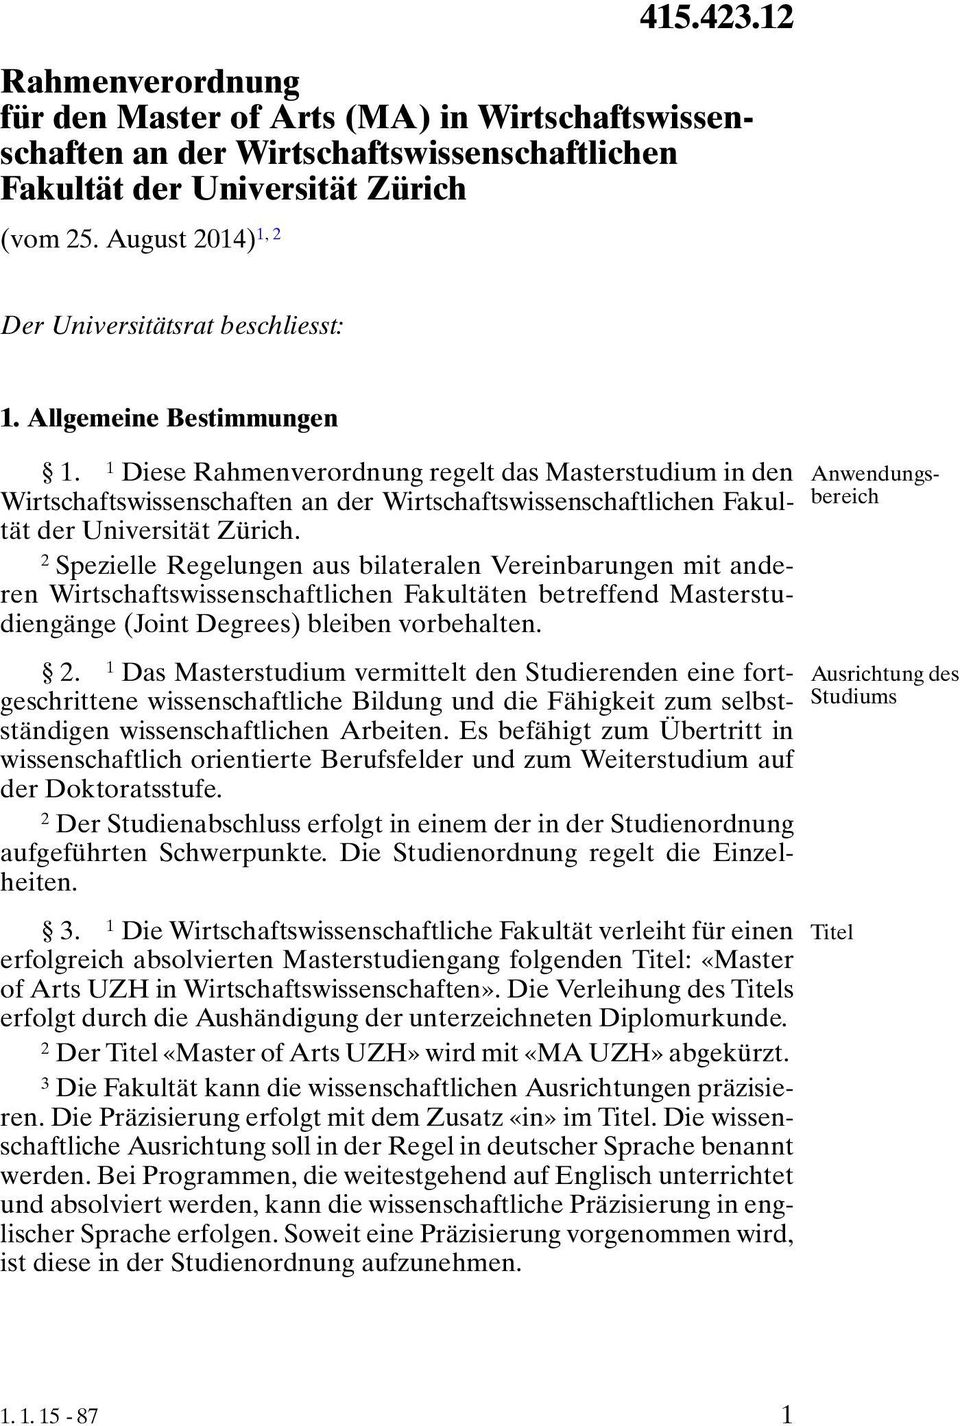 Allgemeine Bestimmungen. Diese Rahmenverordnung regelt das Masterstudium in den Wirtschaftswissenschaften an der Wirtschaftswissenschaftlichen Fakultät der Universität Zürich.